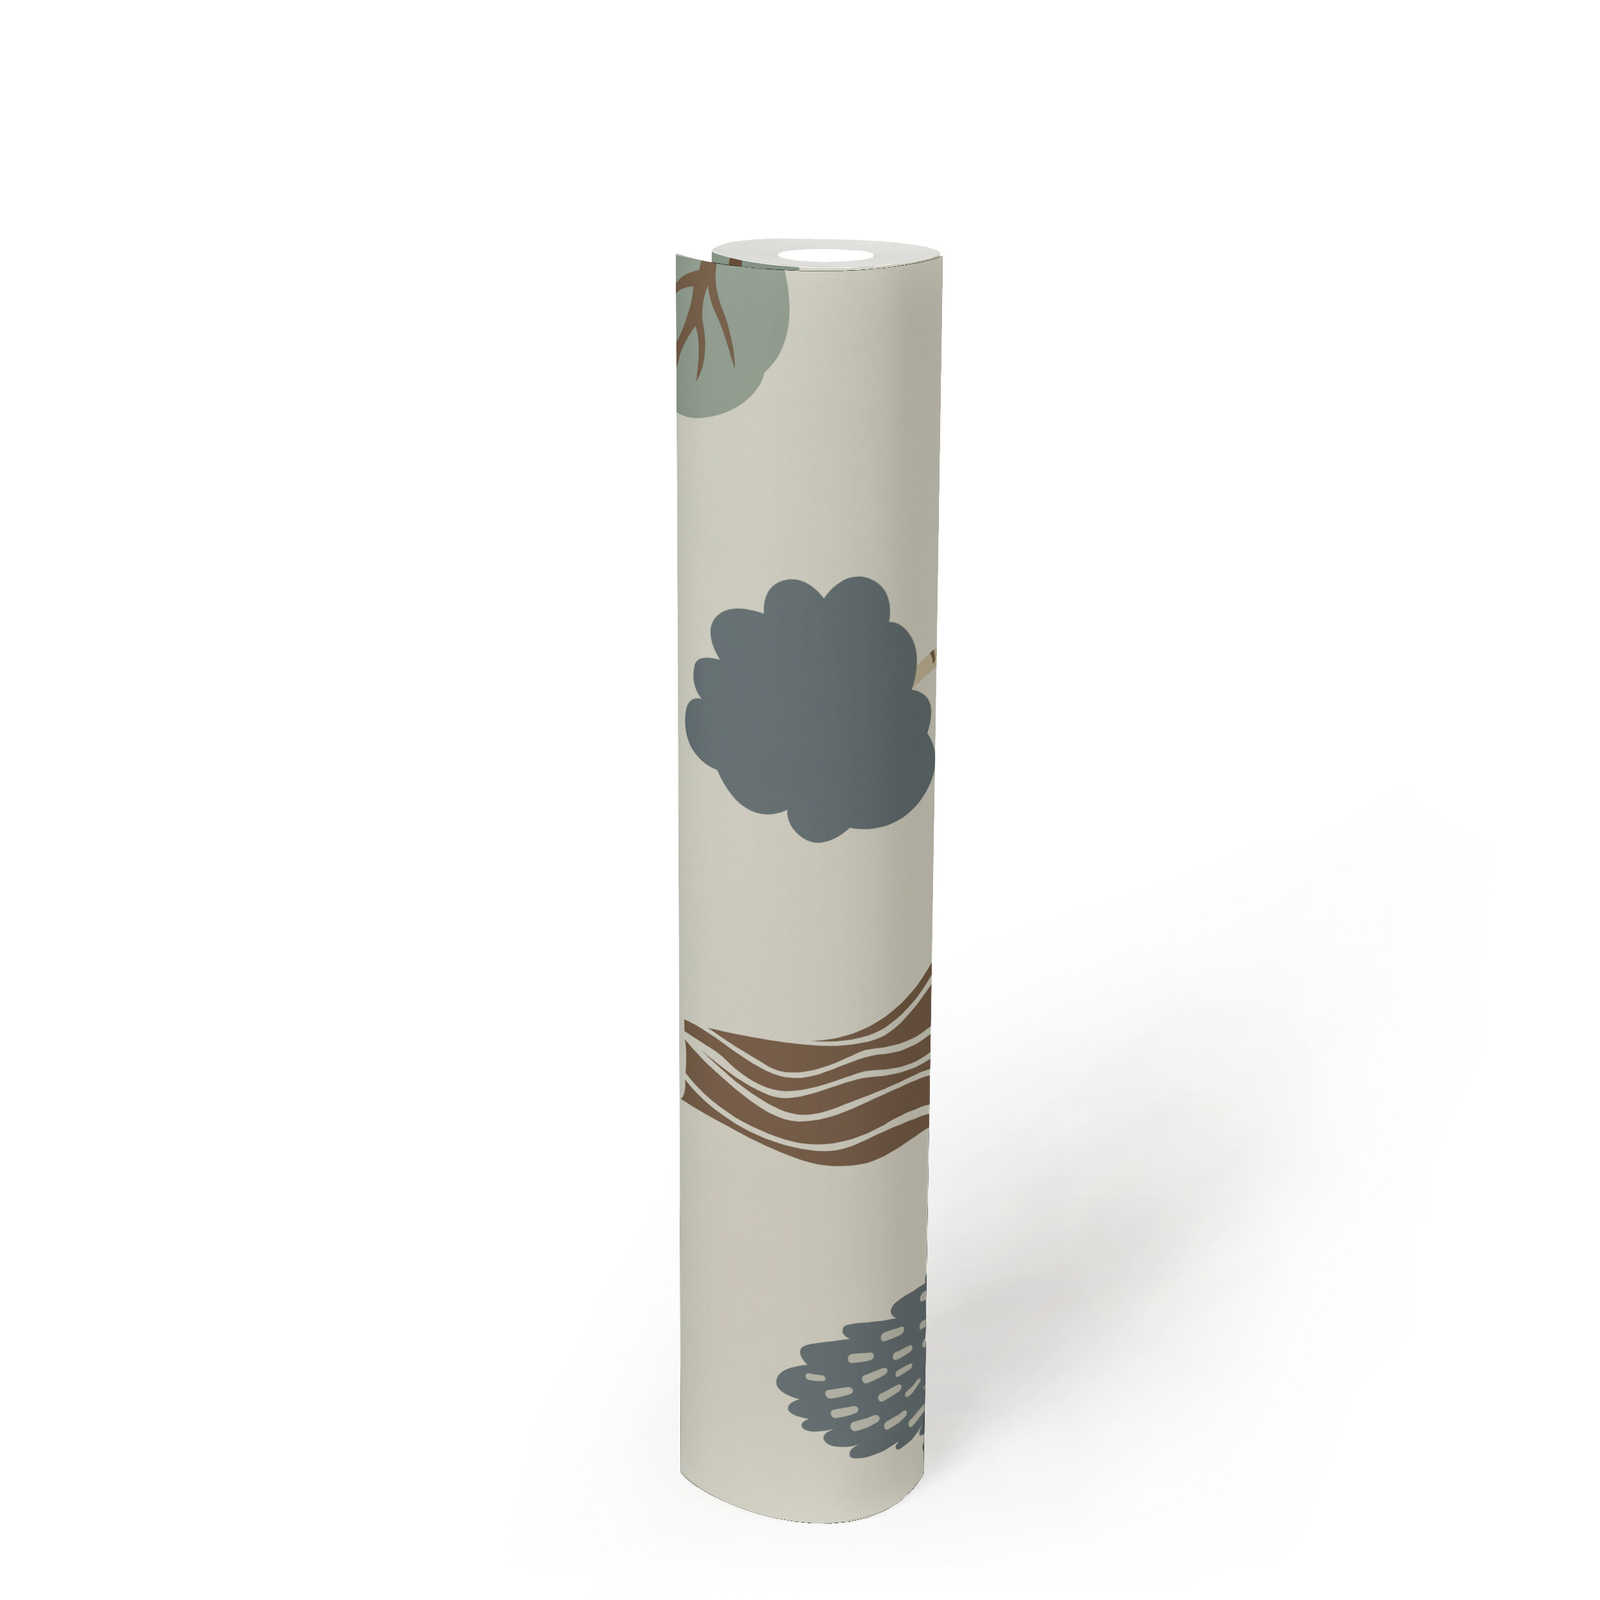             Vliestapete mit minimalen Wald-Motiv mit Bäumen – Creme, Grün, Braun
        